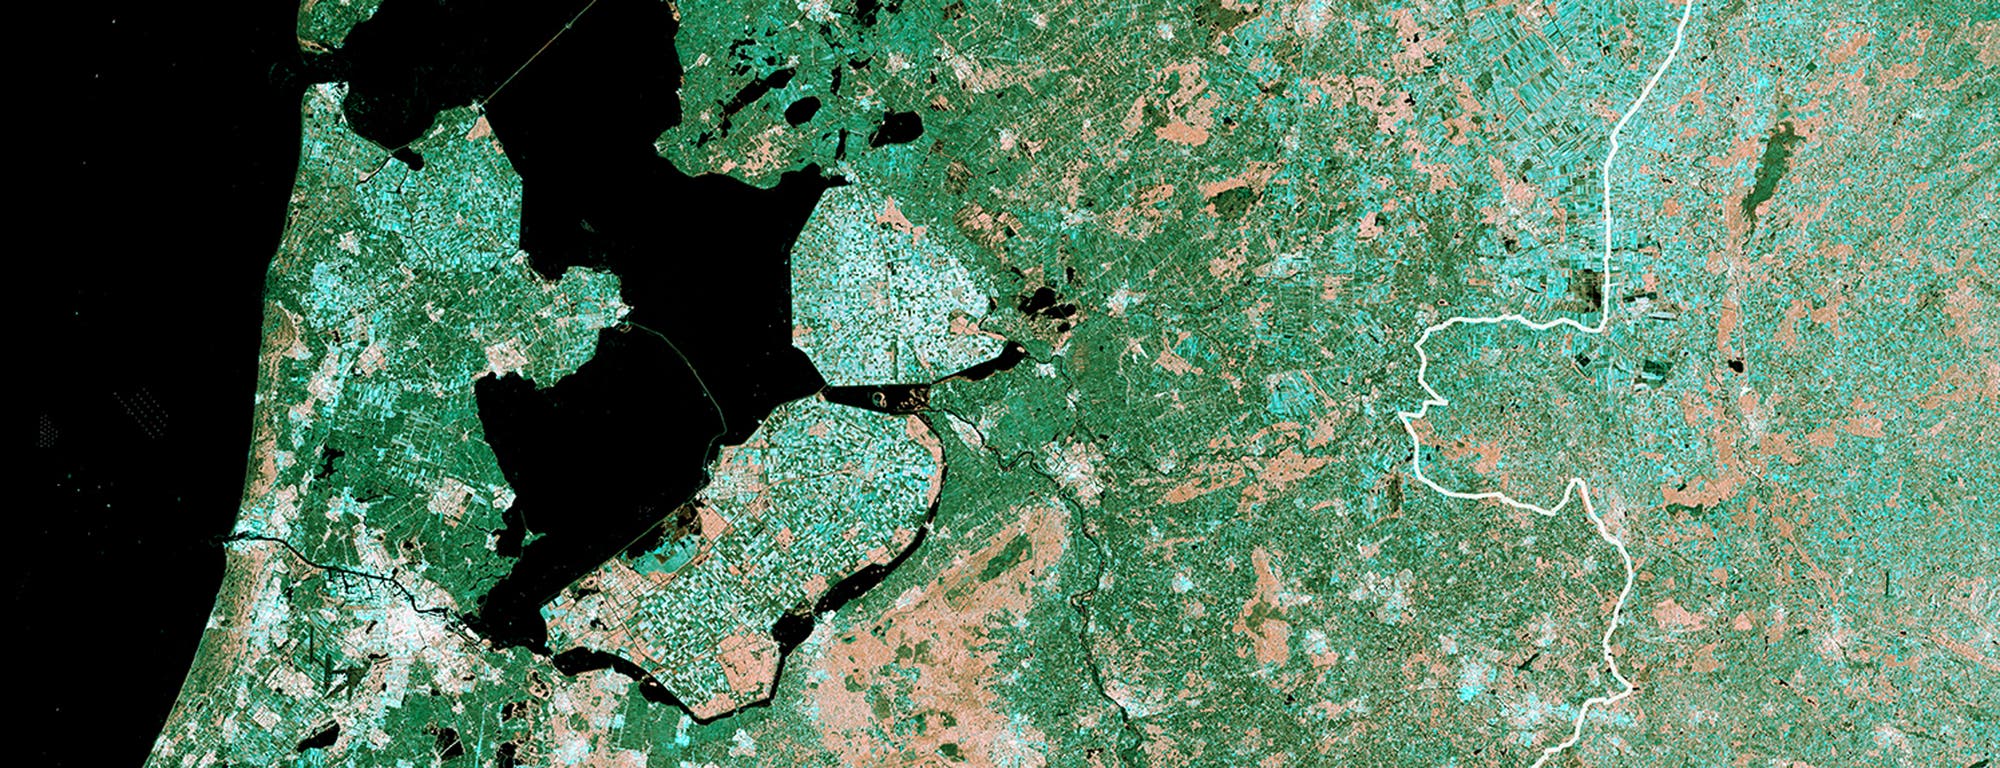 Flevopolder in den Niederlanden ist die größte künstliche Insel